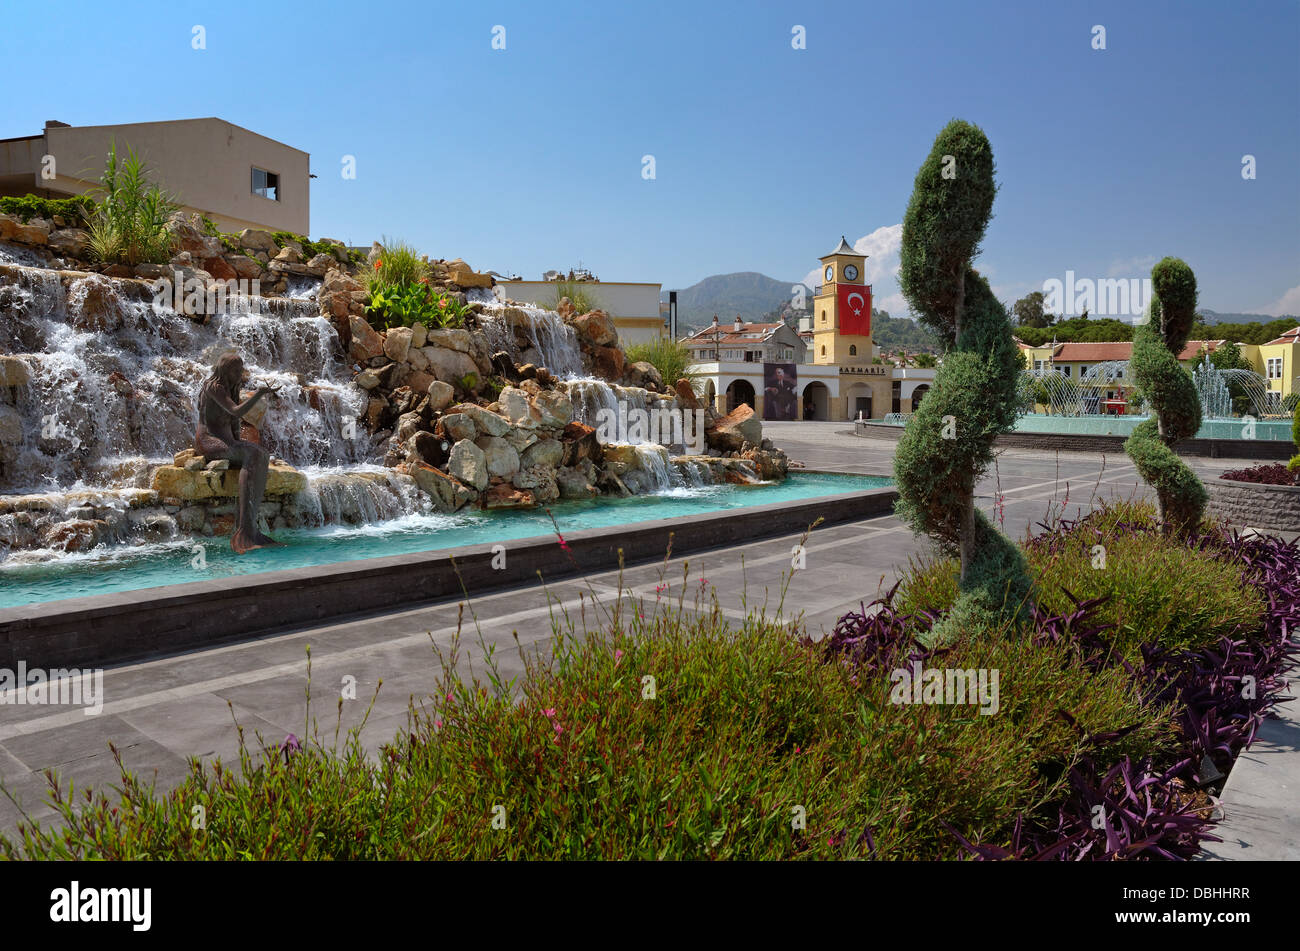 La nouvelle place de la ville de Marmaris avec fontaines et cascades. Province de Mugla, Turquie. Construit en 2012. Banque D'Images